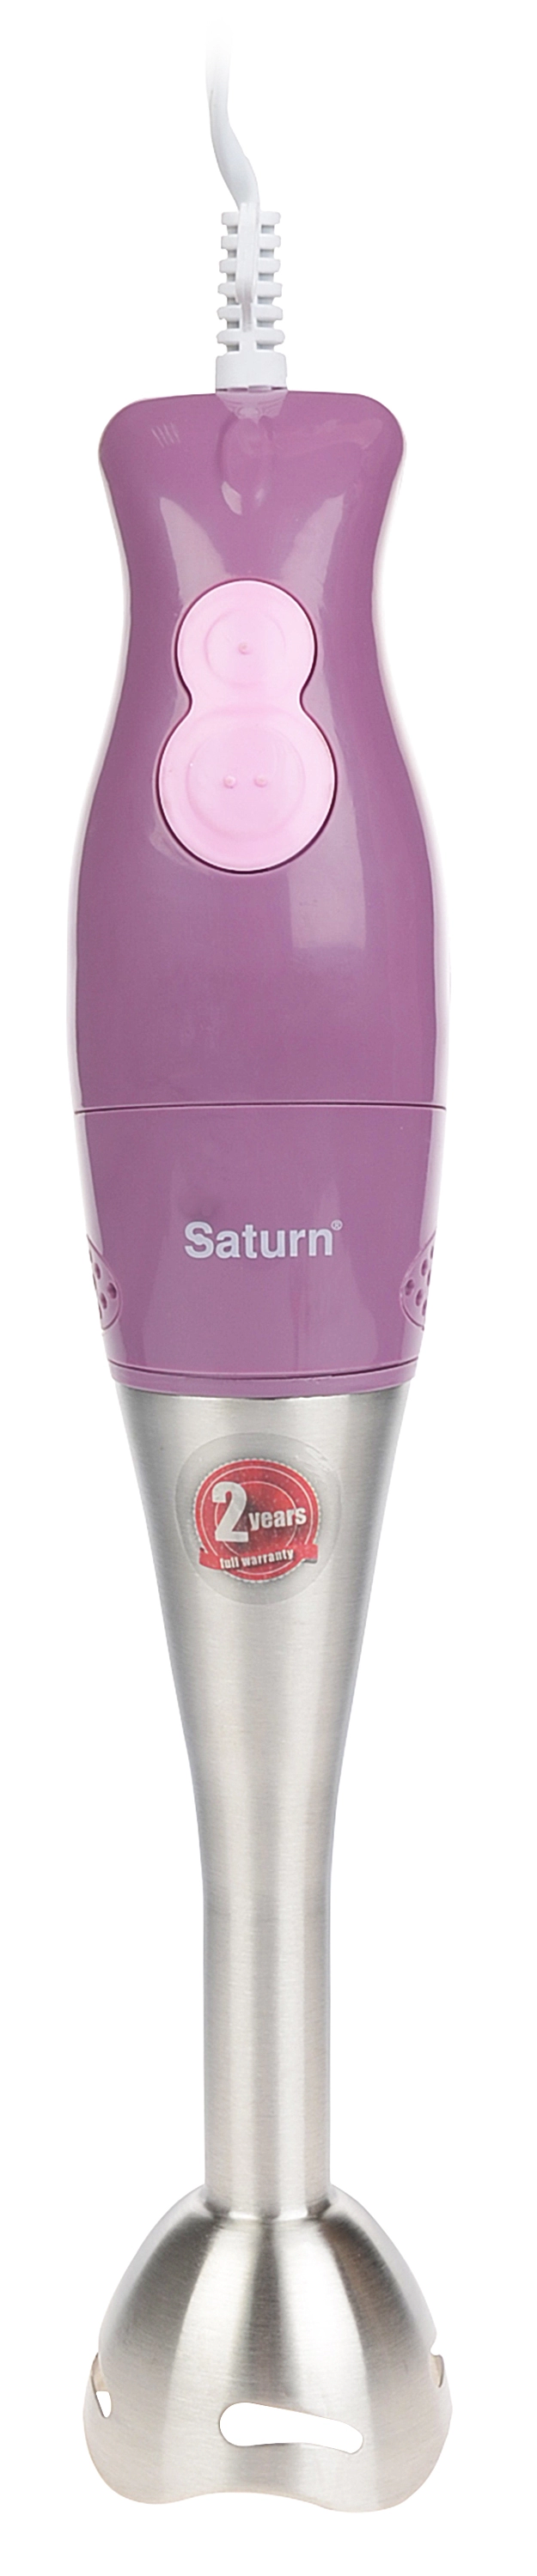 Blender Saturn ST-FP0058, 2 trepte viteza, Violet